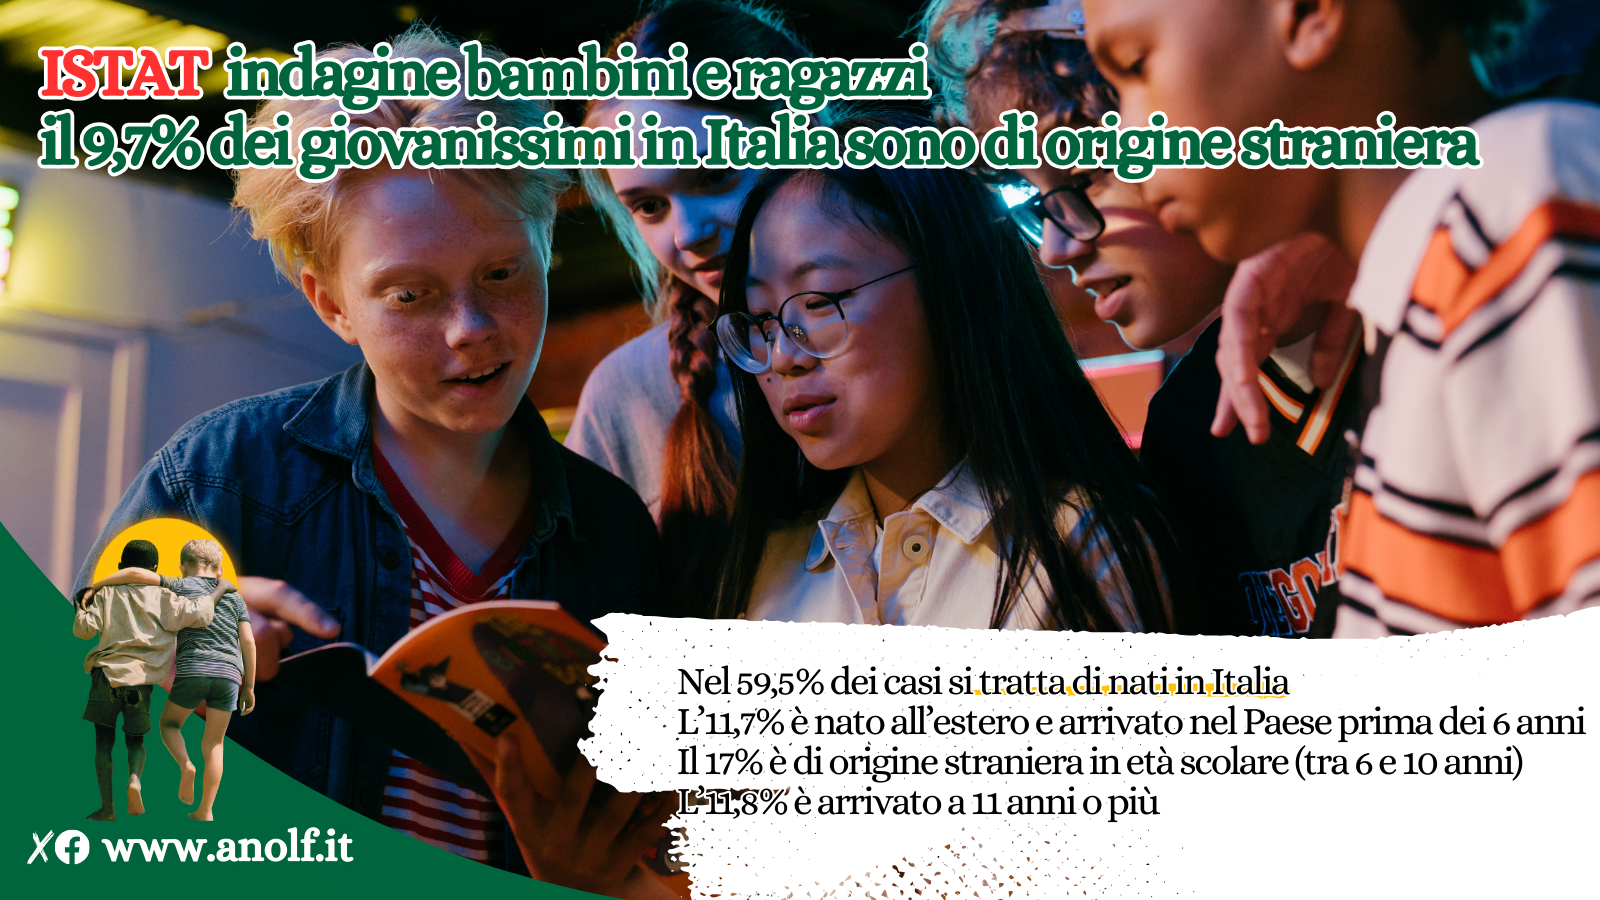 Istat: indagine bambini e ragazzi, il 9,7% dei giovanissimi in Italia sono di origine straniera